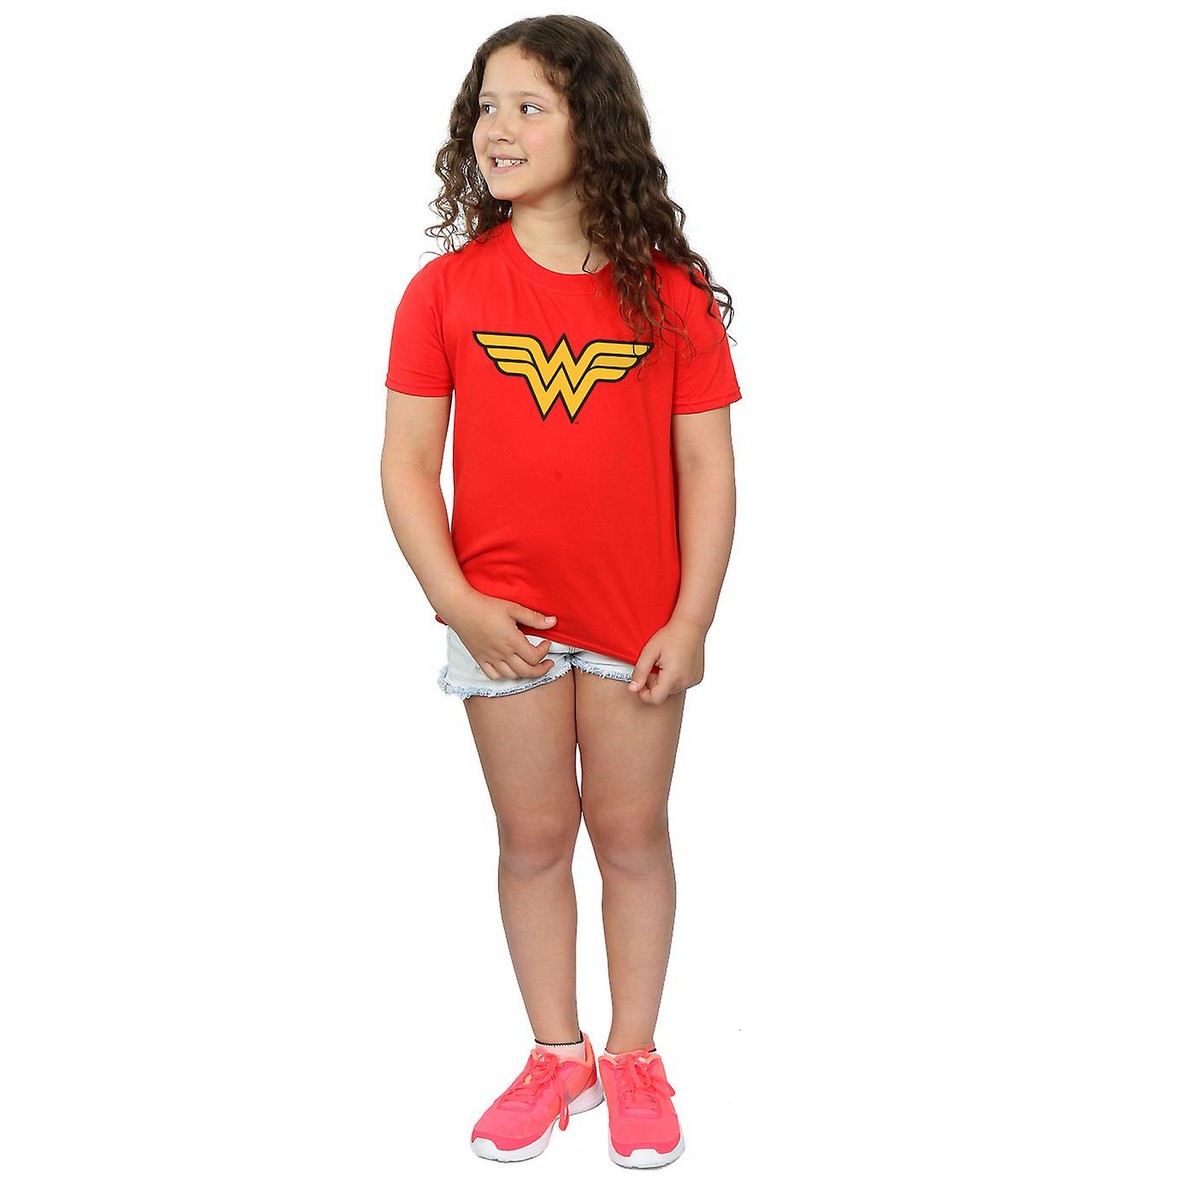 (ワンダーウーマン) Wonder Woman オフィシャル商品 キッズ・子供用 半袖 Tシャツ トップス 女の子 【海外通販】画像